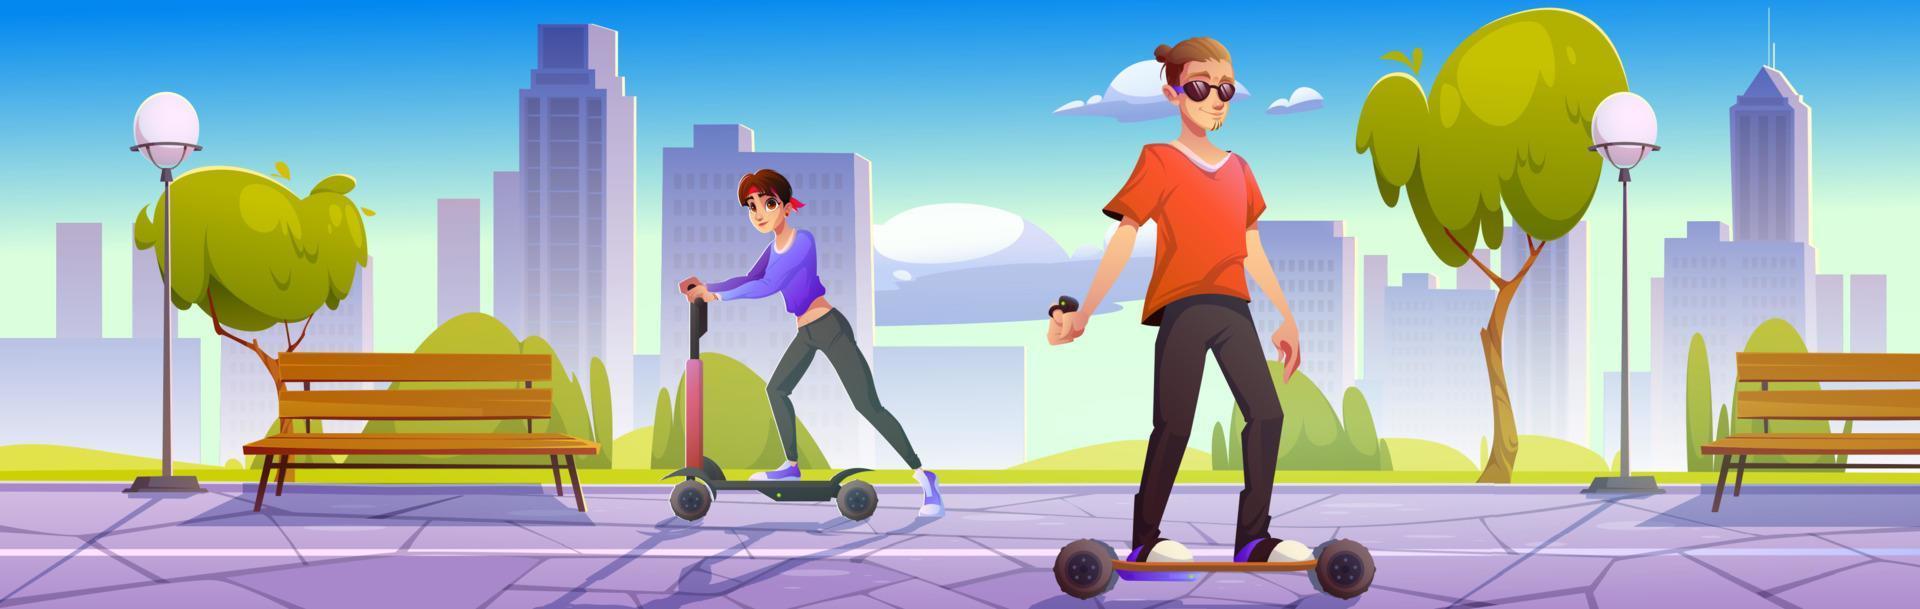 menschen auf elektroroller und skateboard im park vektor